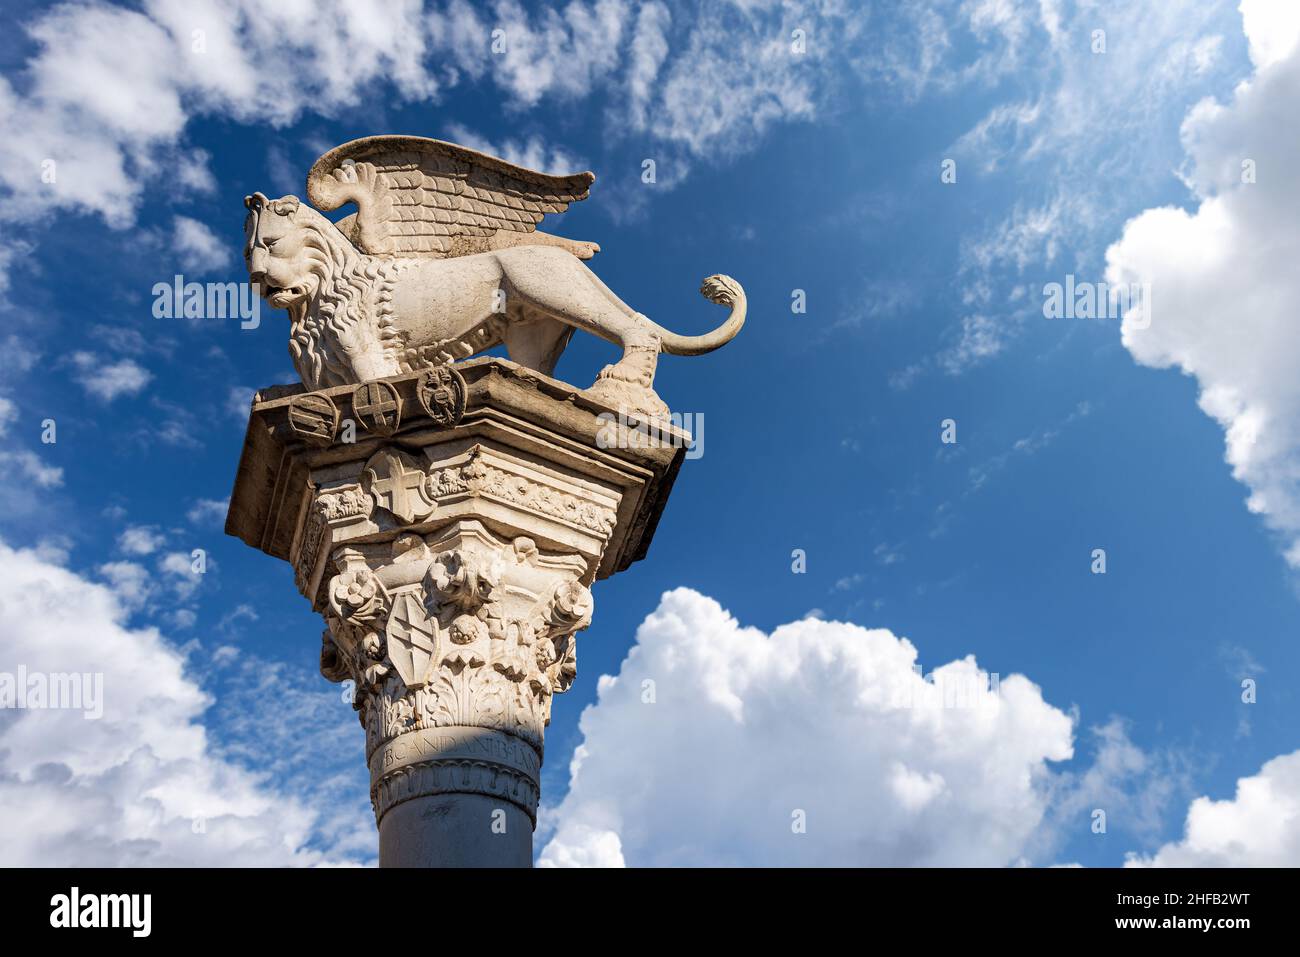 Columna con el León Alado de San Marcos símbolo de la República Veneciana y la Marca del Evangelista. Vicenza, Piazza dei Signori, Veneto, Italia. Foto de stock